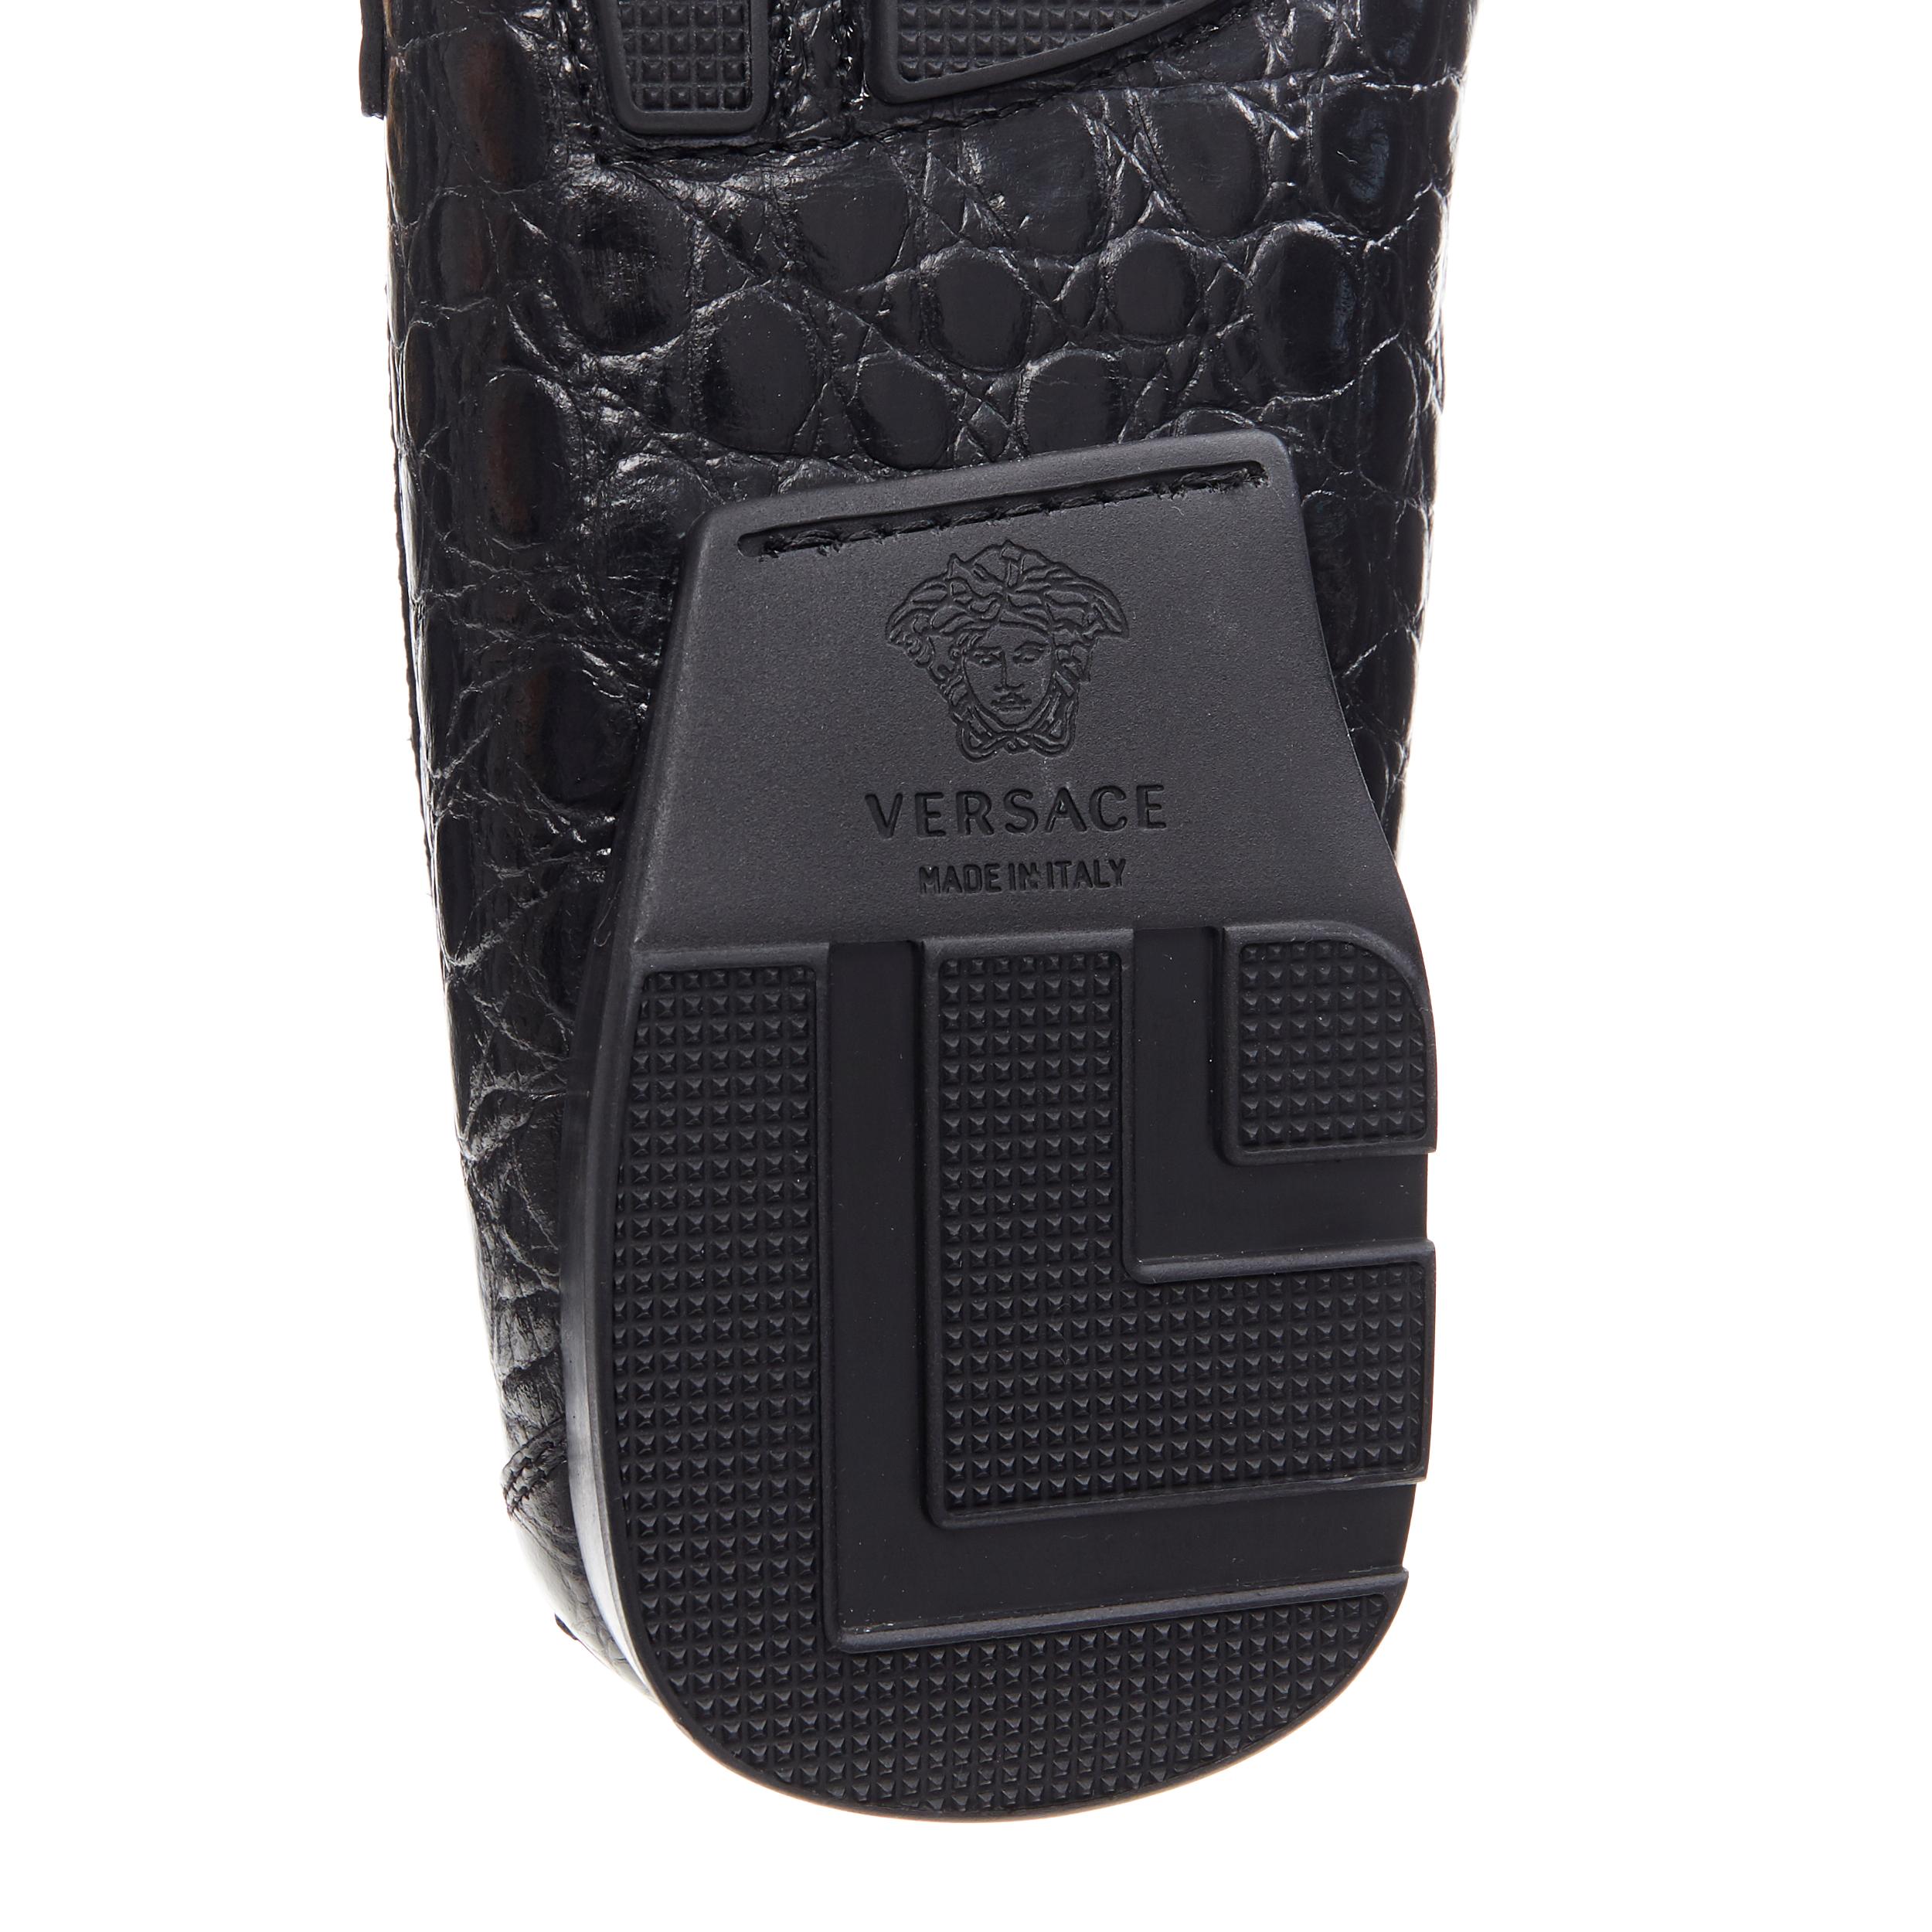 new VERSACE black mock croc leather silver Medusa strapped car shoe loafer EU44 3